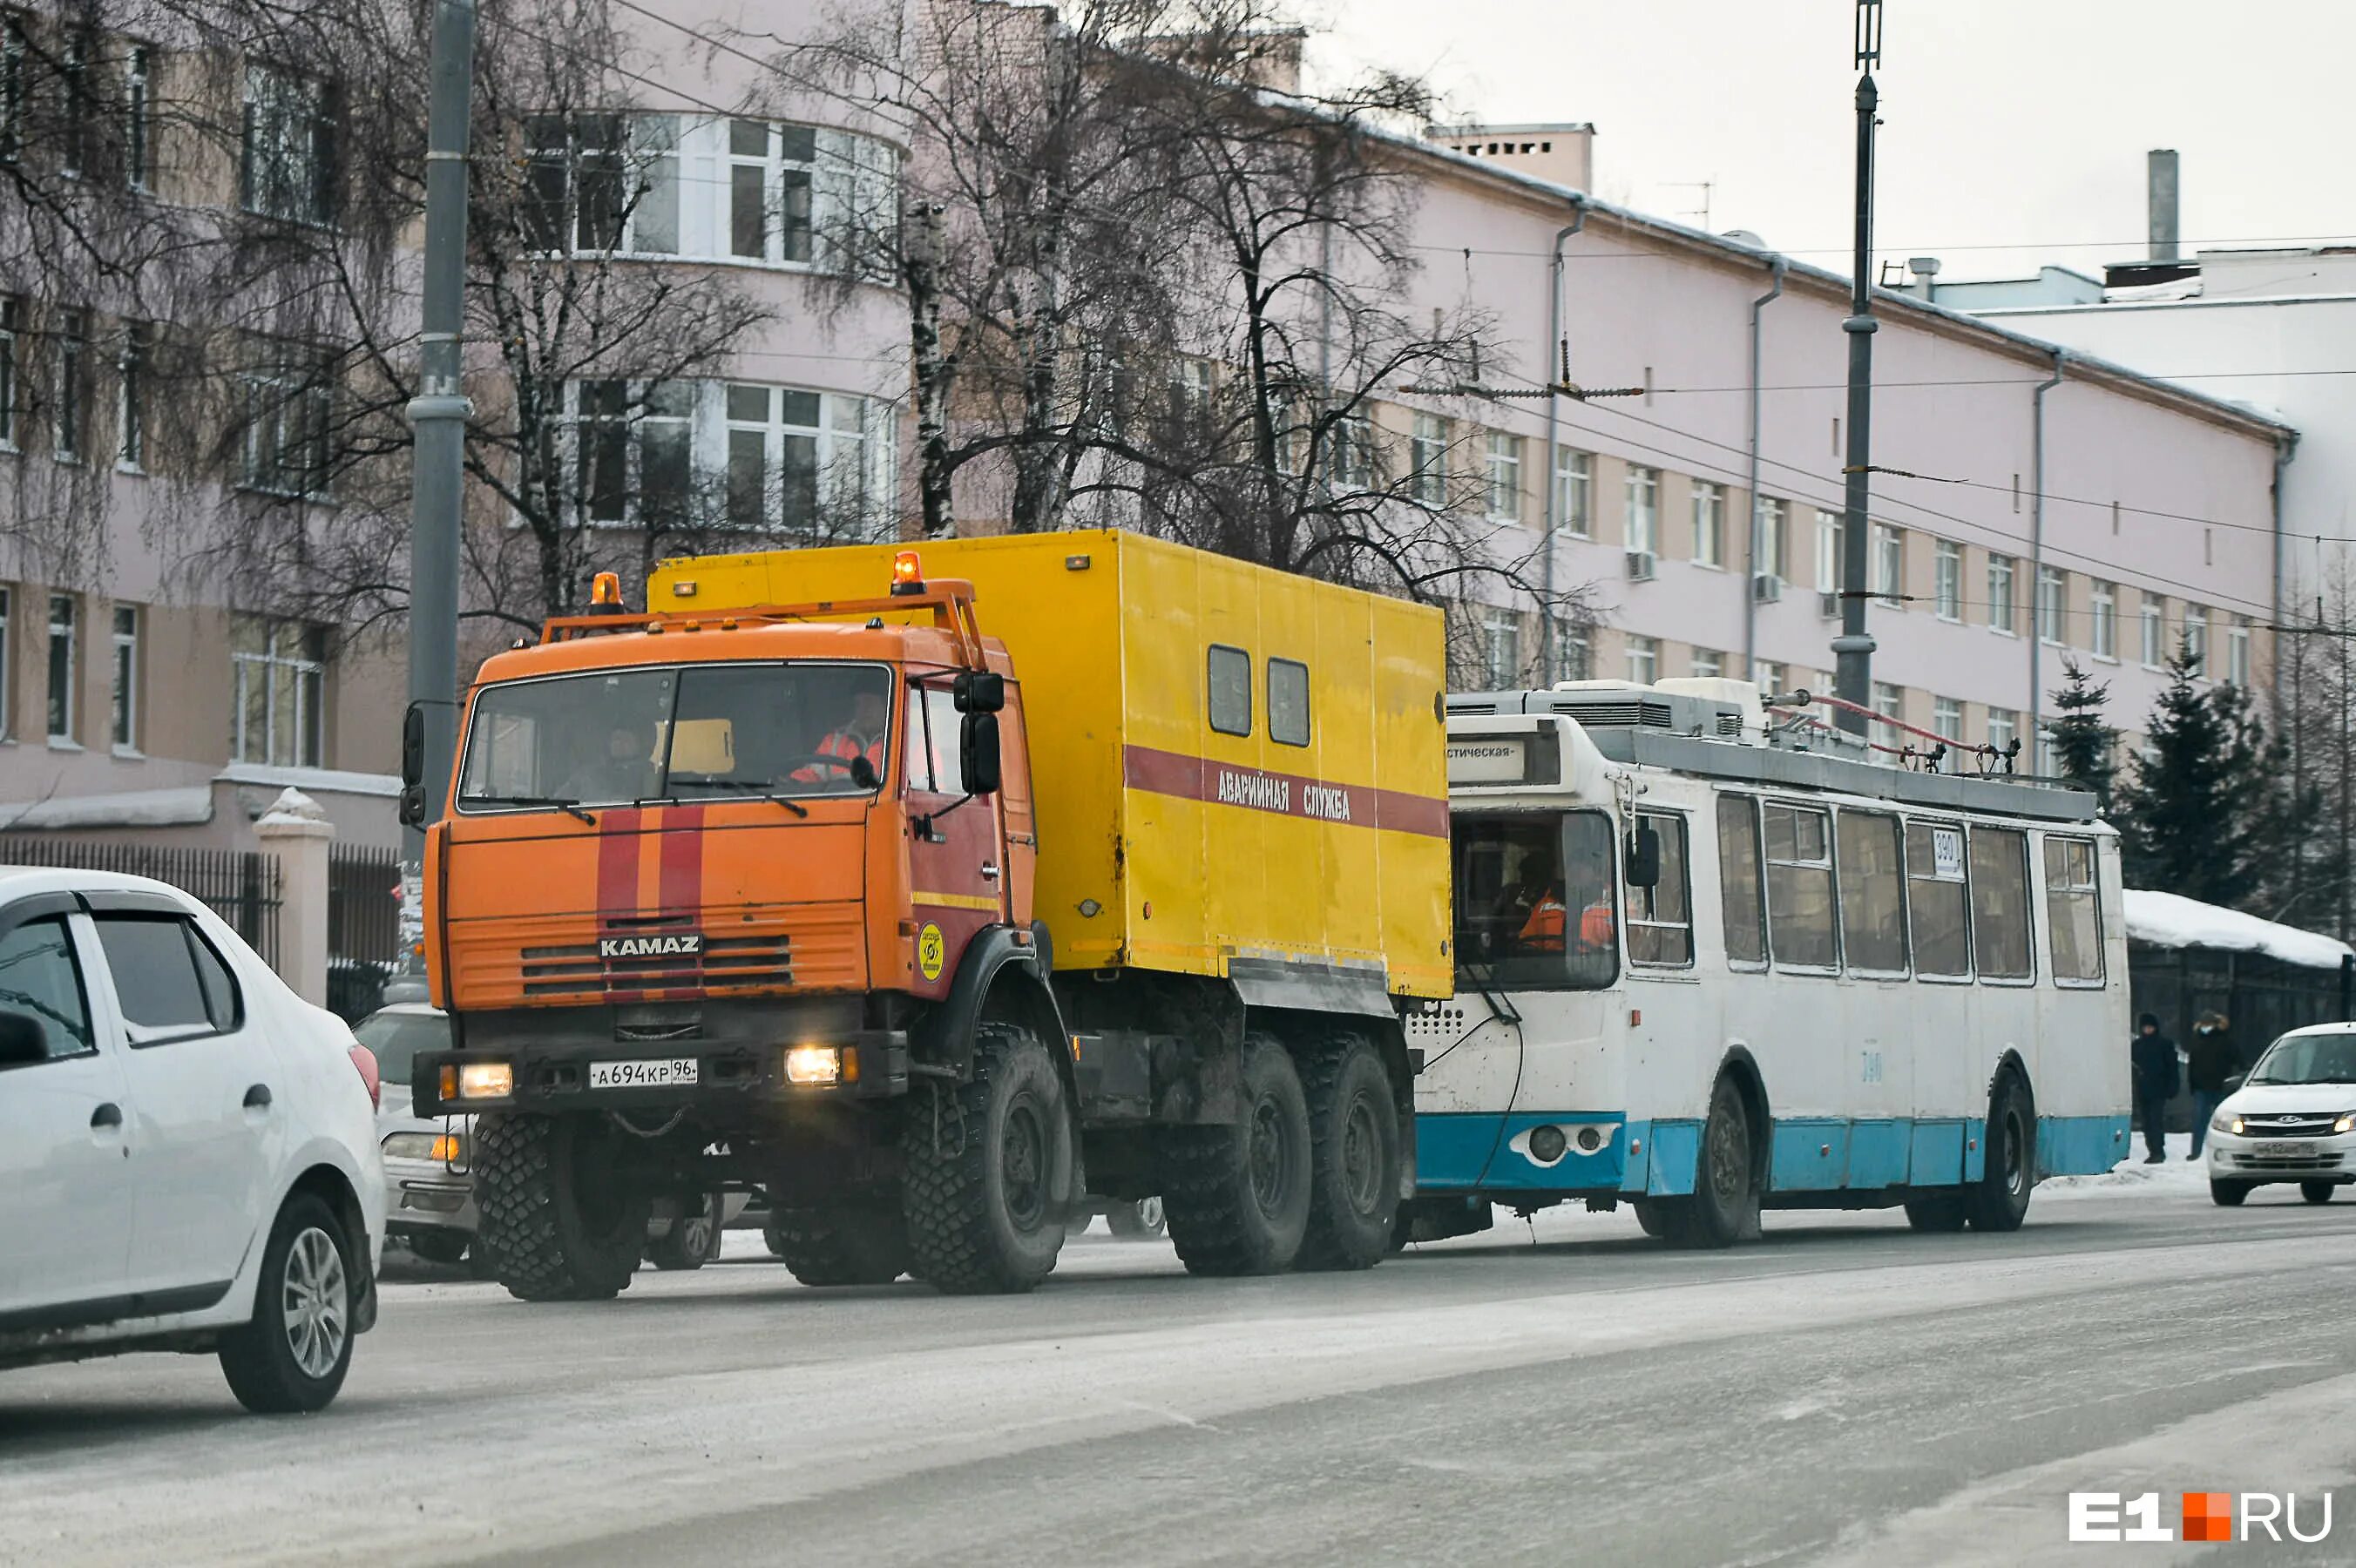 Автомобиль. КАМАЗ тащит автобус. Троллейбус на буксире. Трактора тянут троллейбус в Киеве.